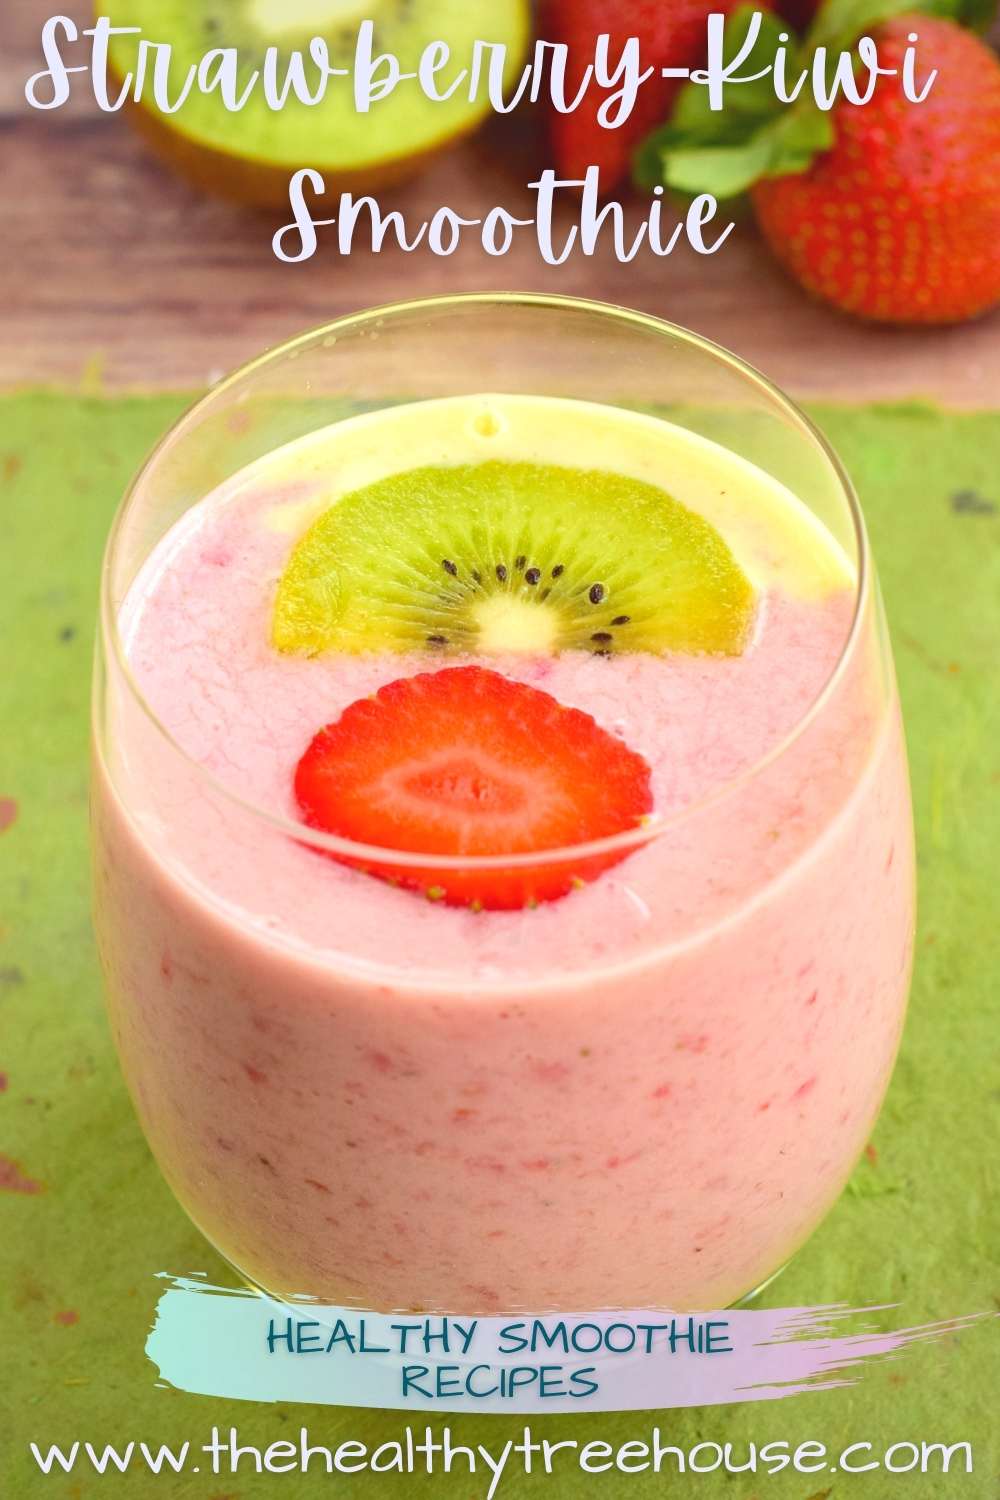 Strawberry-Kiwi Smoothie Recipe - The Healthy Treehouse